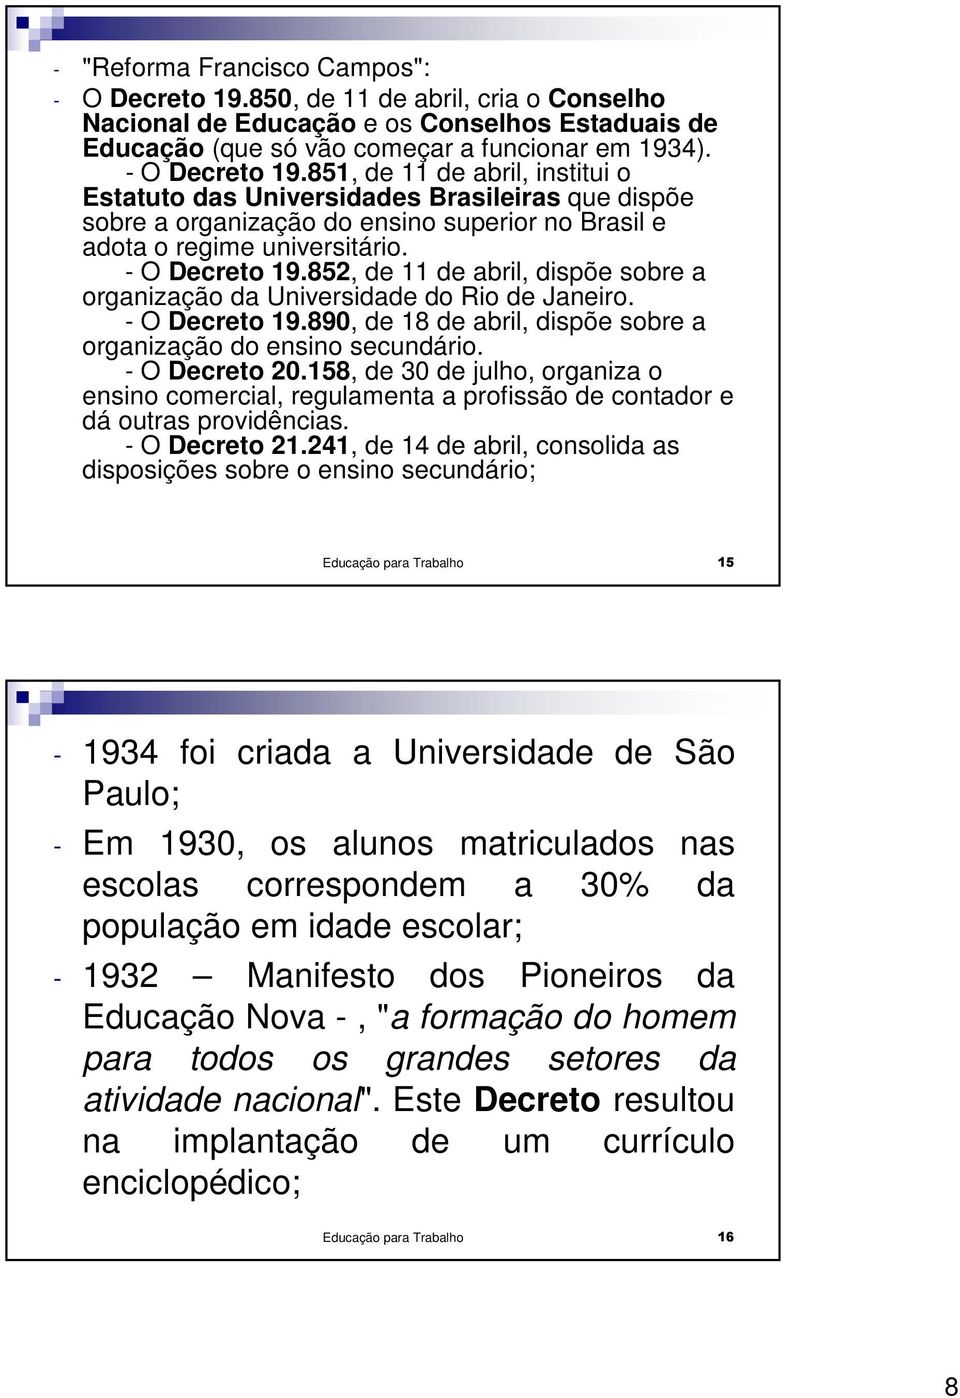 851, de 11 de abril, institui o Estatuto das Universidades Brasileiras que dispõe sobre a organização do ensino superior no Brasil e adota o regime universitário. - O Decreto 19.